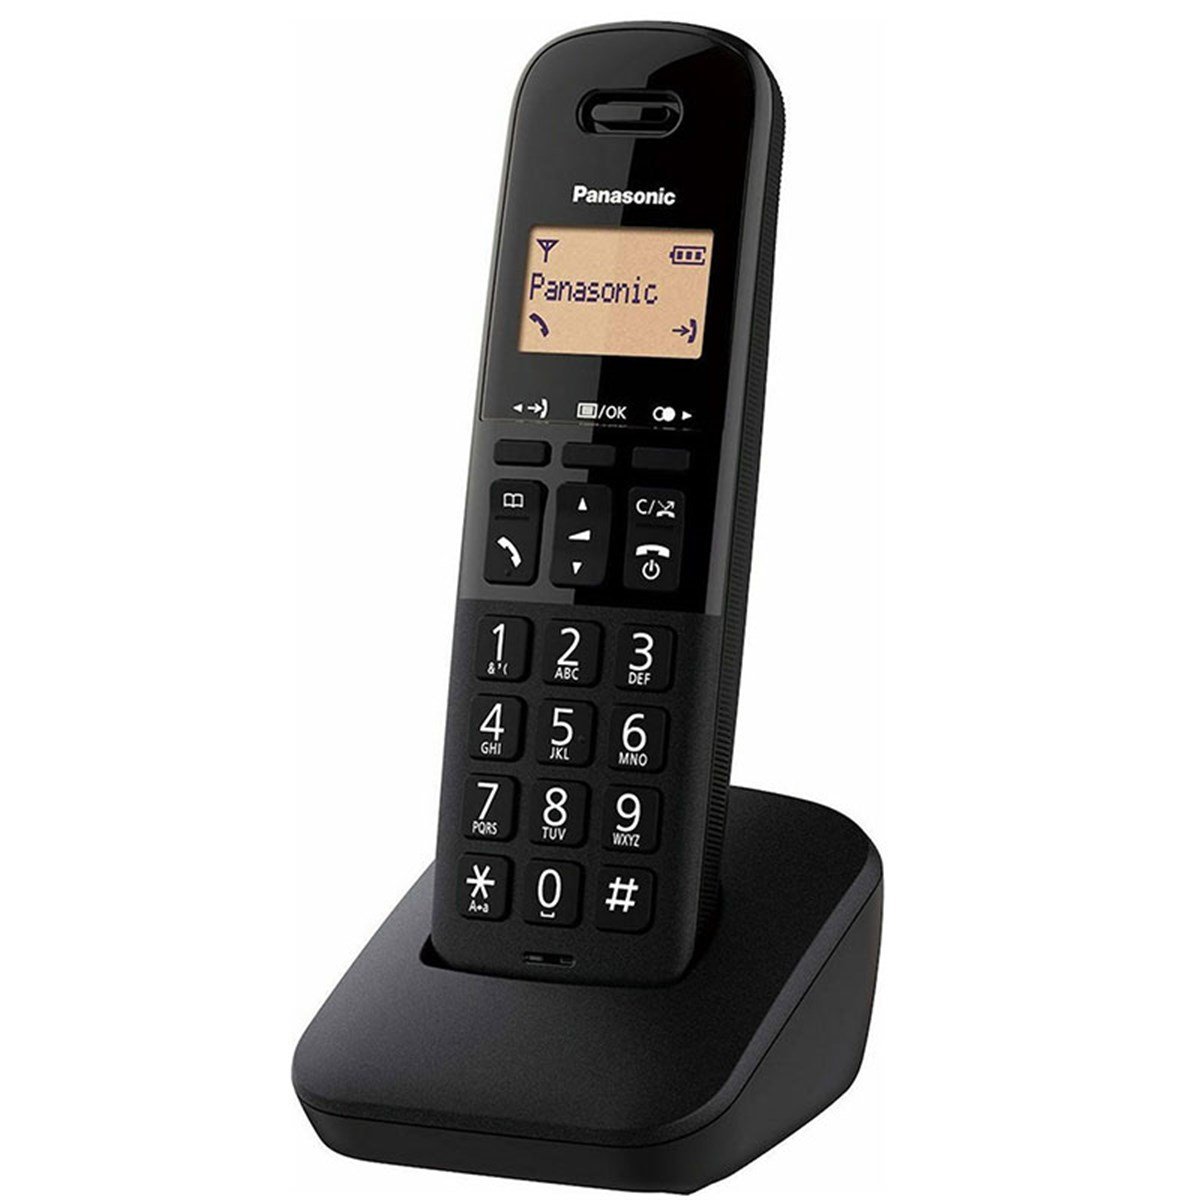 PANASONIC KX-TGB610 DECT SİYAH TELSİZ TELEFON 2343 | www.hizlistok.com.tr de  sizin için en uygun fiyatlarda